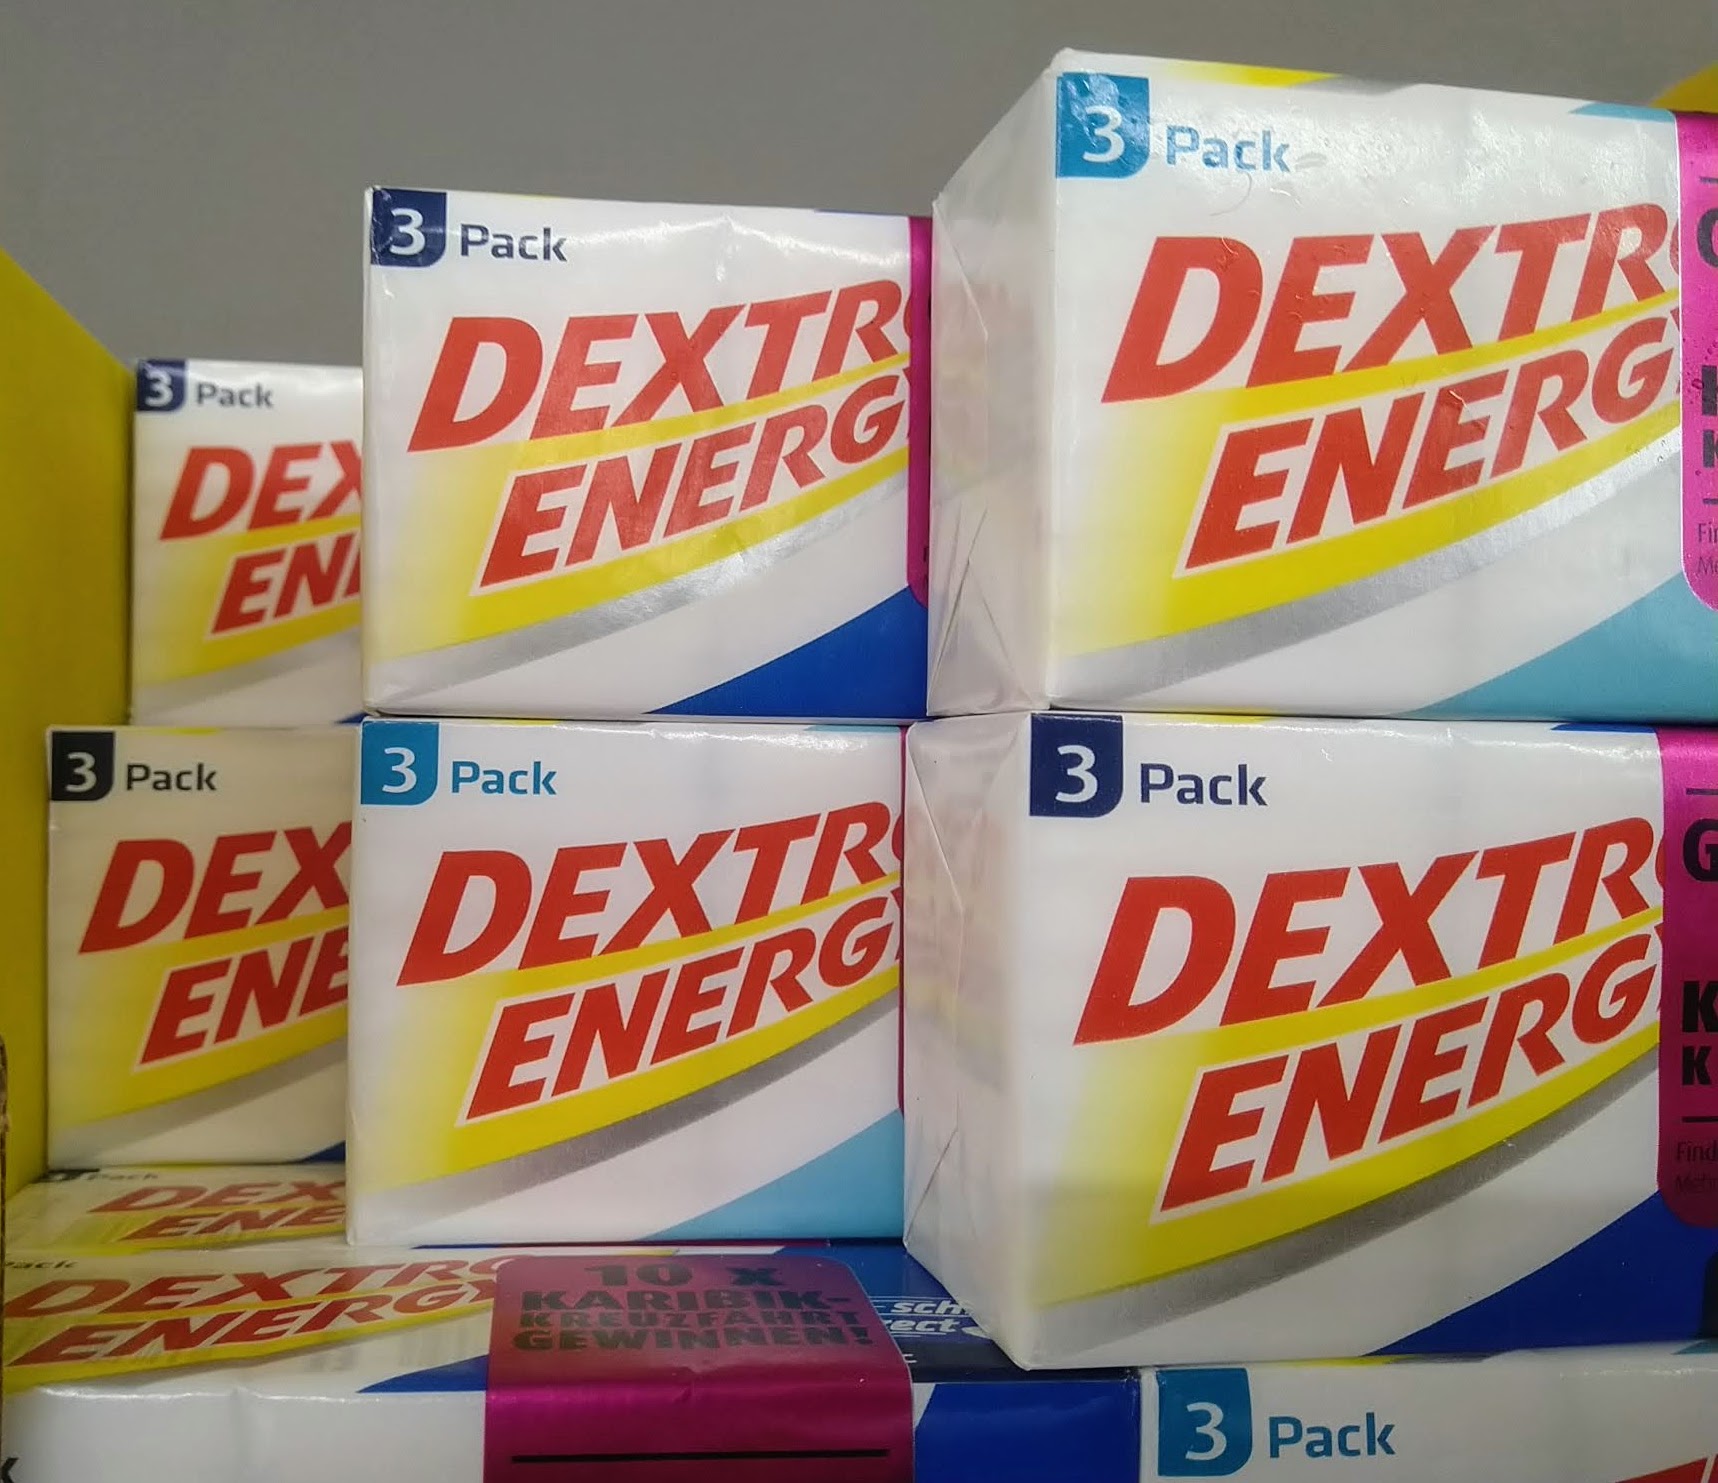 Dextro Energy: Tankgutscheine gewinnen